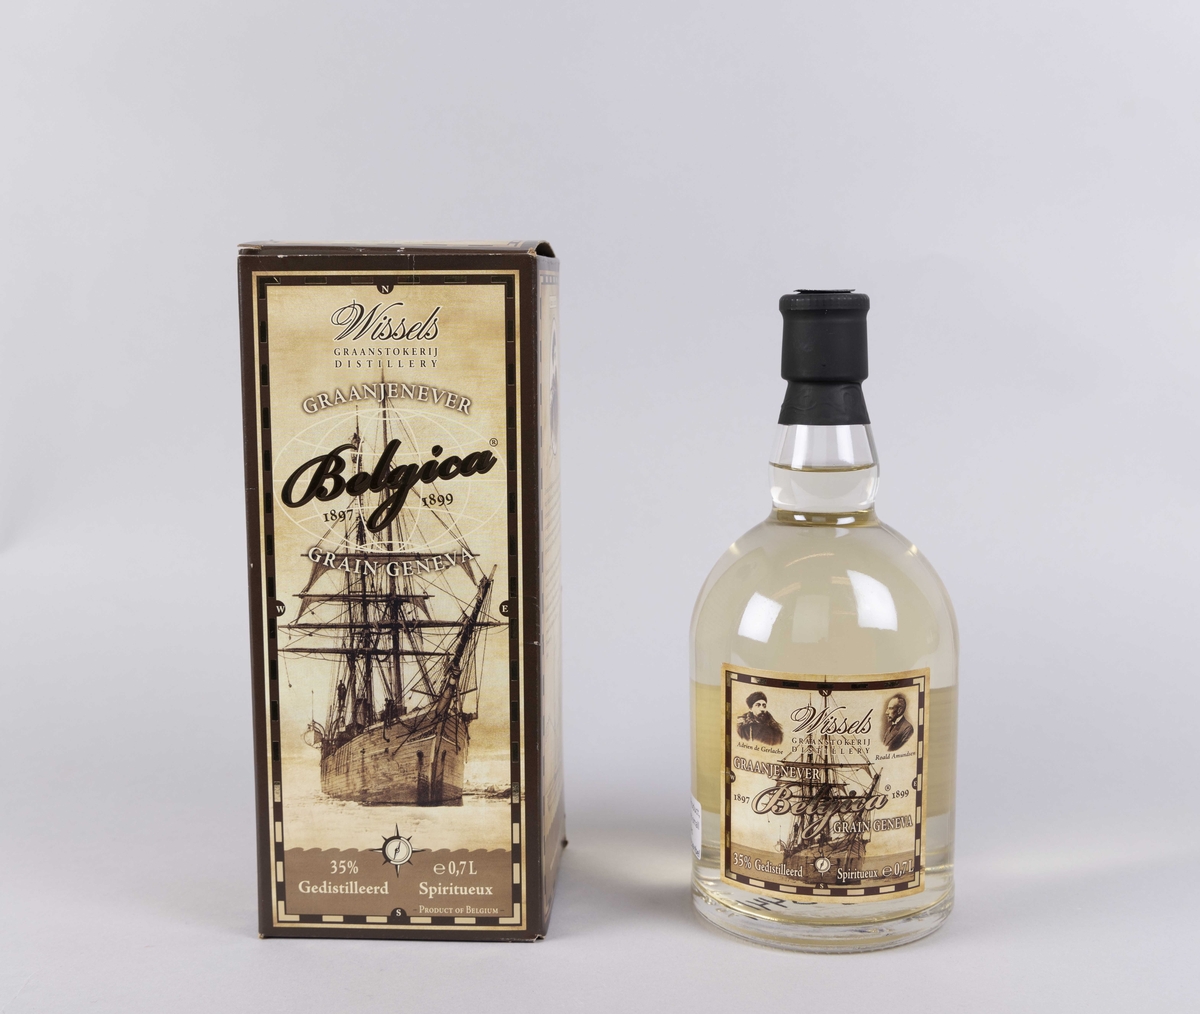 Etikett på geneverflaske med motiv av skipet BELGICA samt protrett av Addddrien de Gerlache og Roald Amundsen.